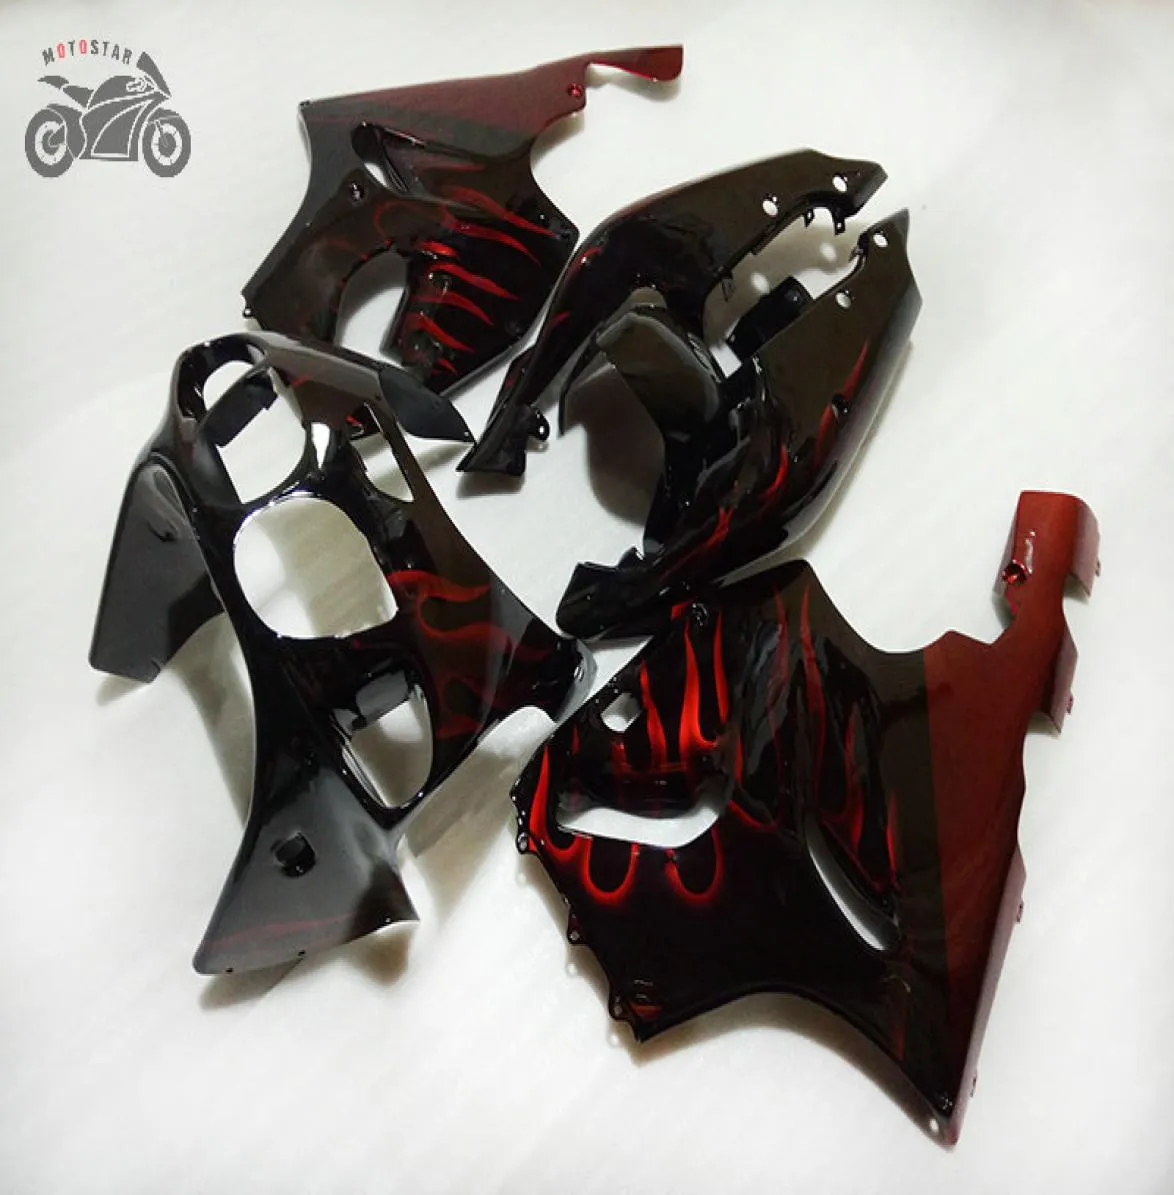 Motorcykel kinesisk mairing kit för kawasaki ninja zx7r 96 97 98 99 0003 zx7r 19962003 röda lågor abs plastmässor set1003007